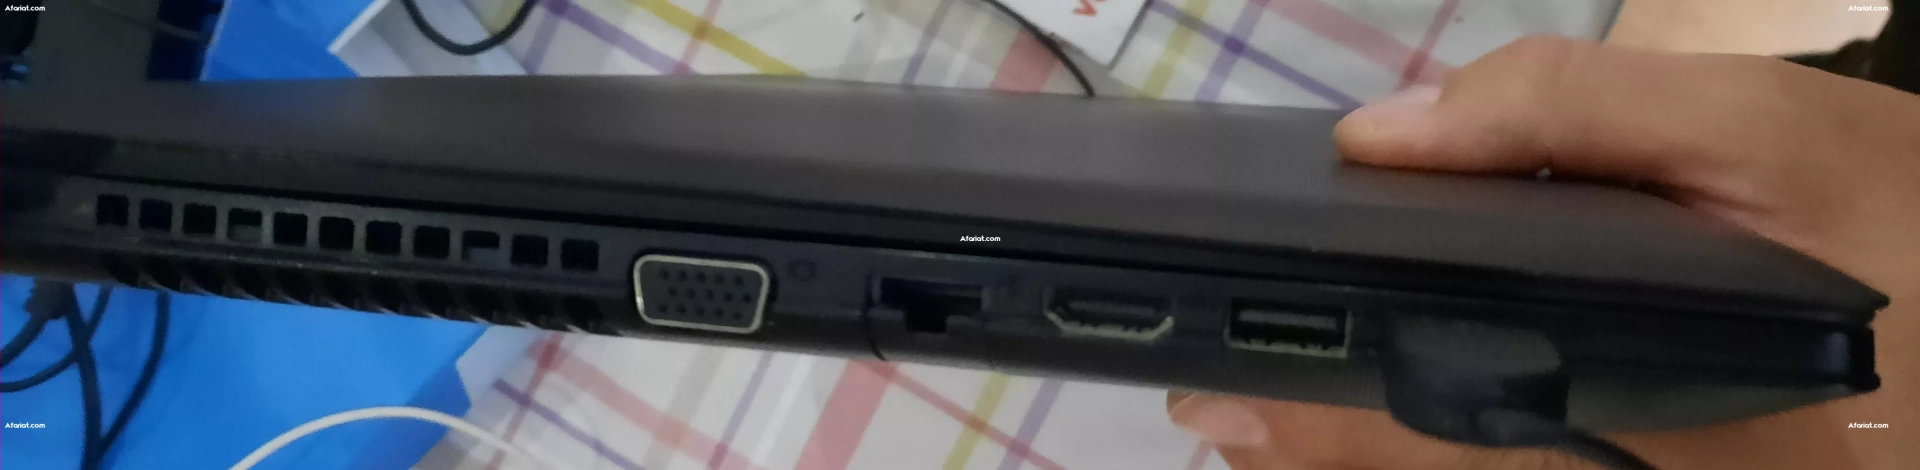 PC Portable Lenovo i3 Excellent état